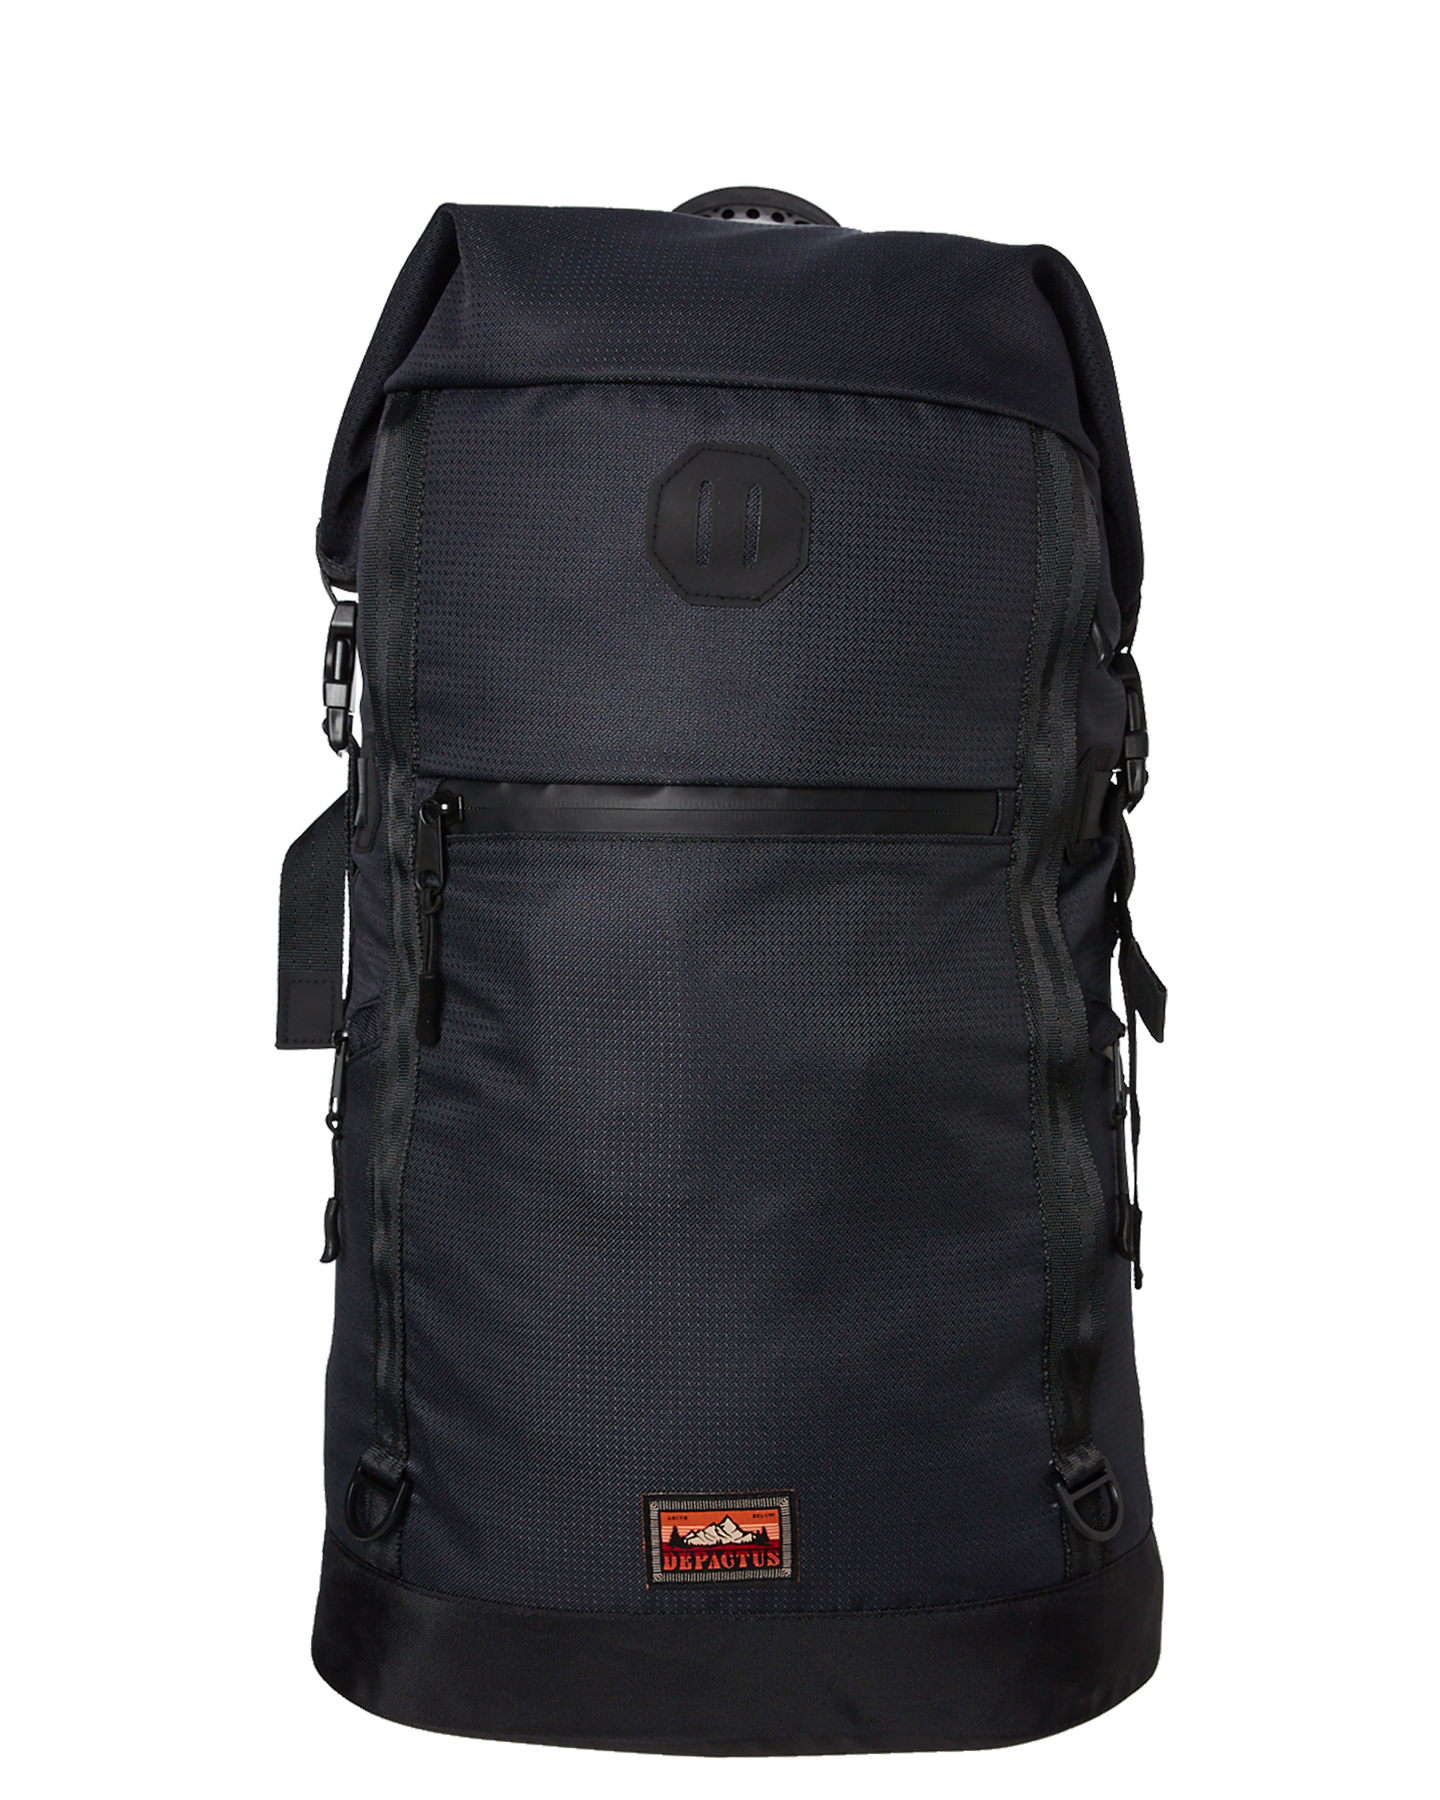 Depactus Denver Roll Top Wetpack 26L Backpack - Black | SurfStitch